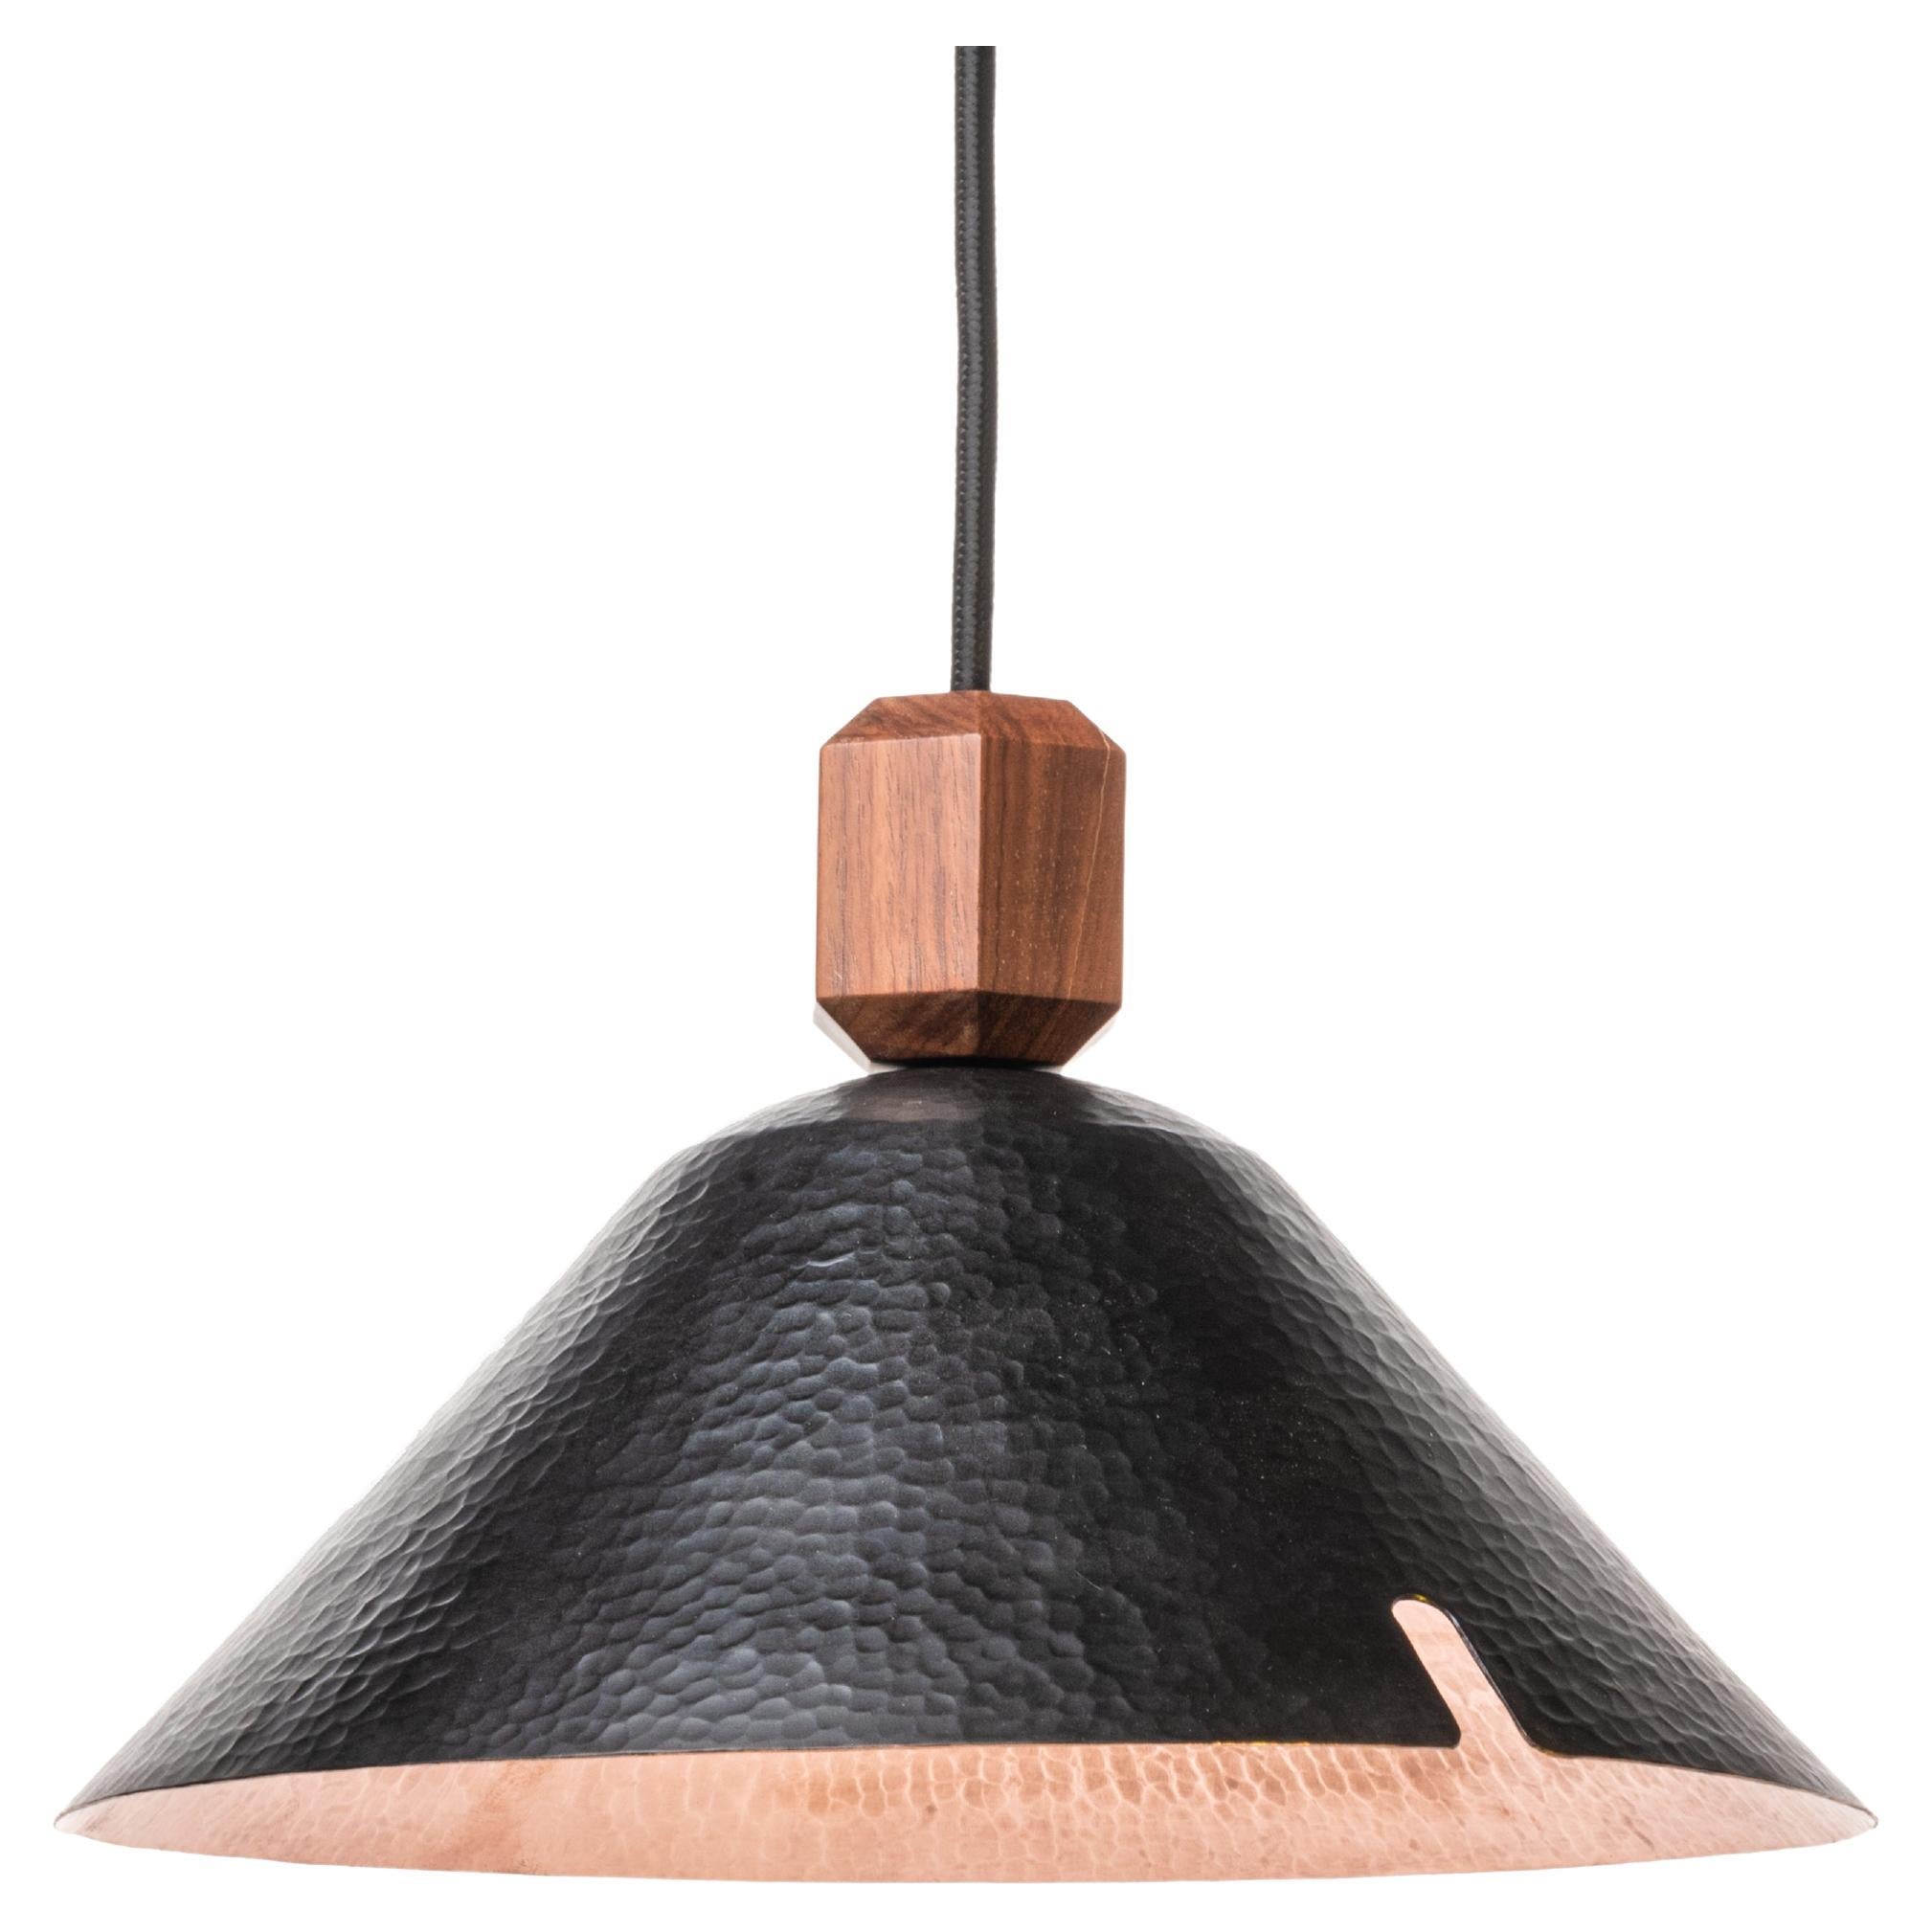 Hammered Copper Pendant Lamp Model V For Sale